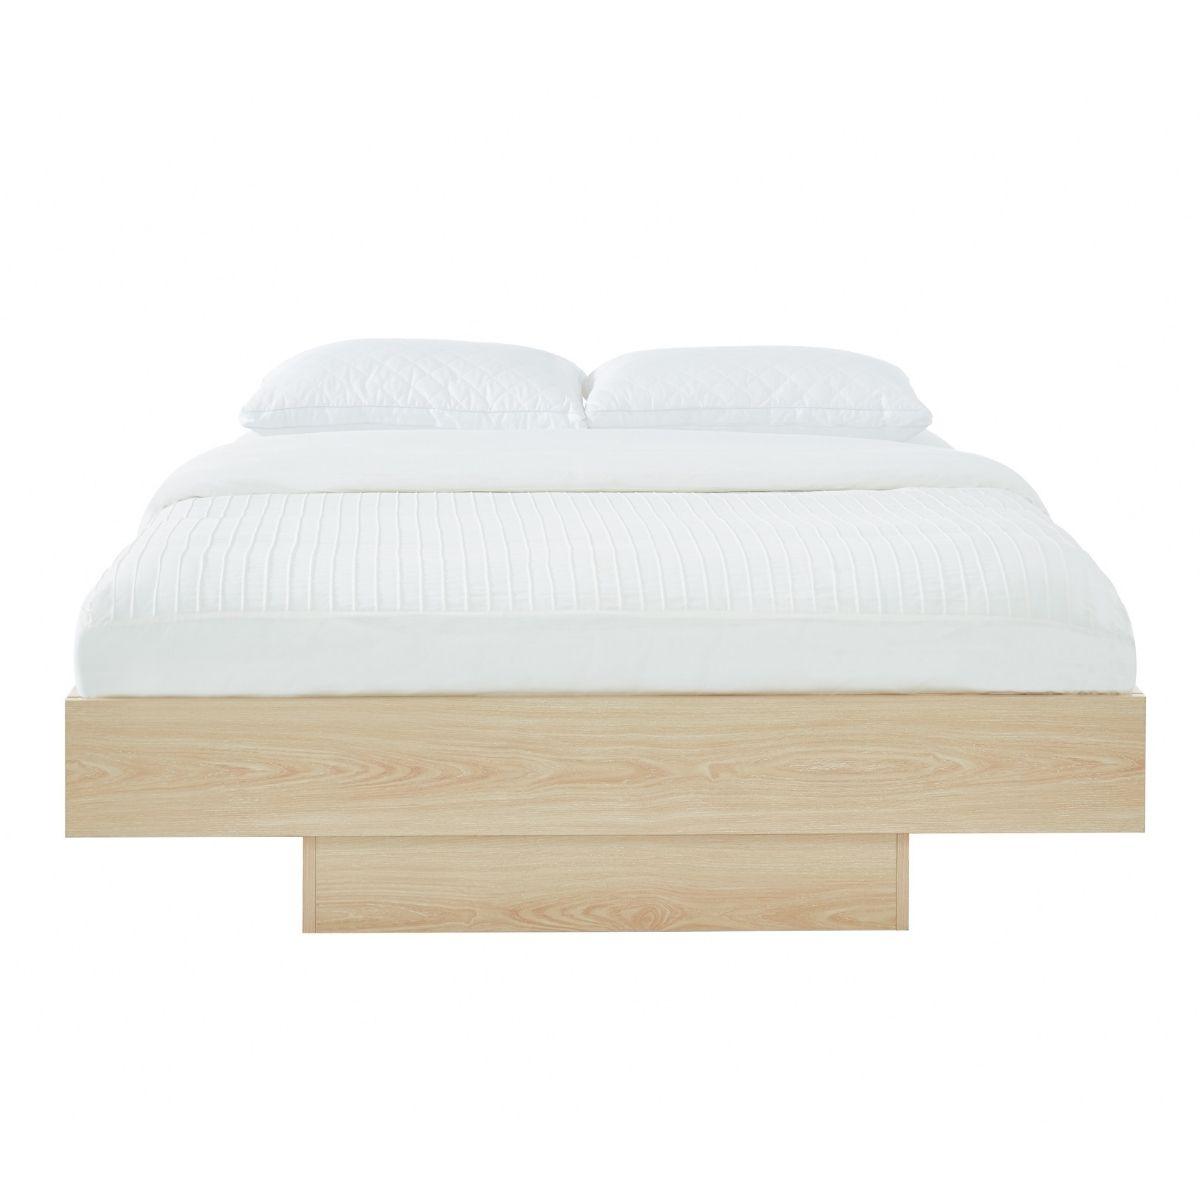 Natural Oak Wood Floating Bed Base King